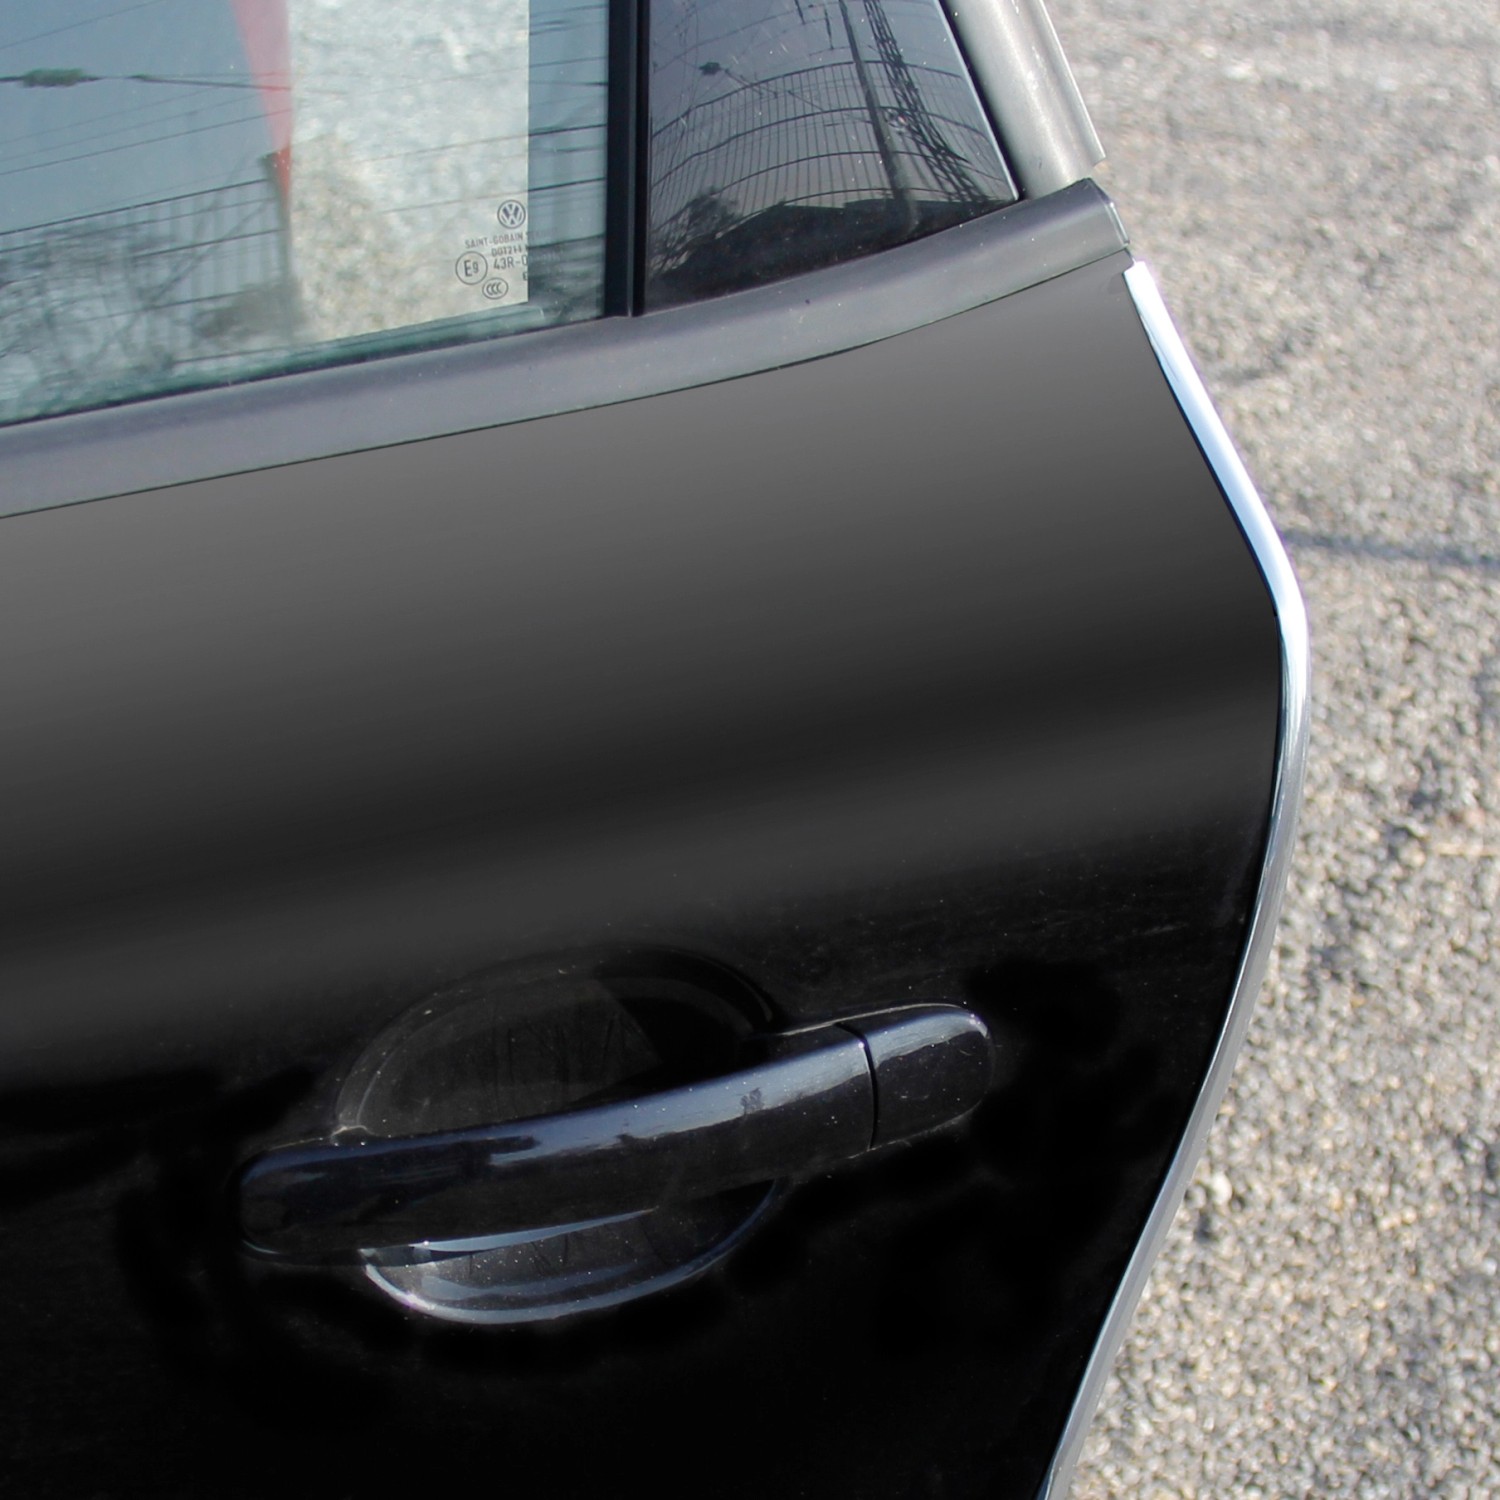 Kantenschutz fürs Auto, schwarz, L-förmig, von Norauto, 65 cm, 2 Stück - ATU